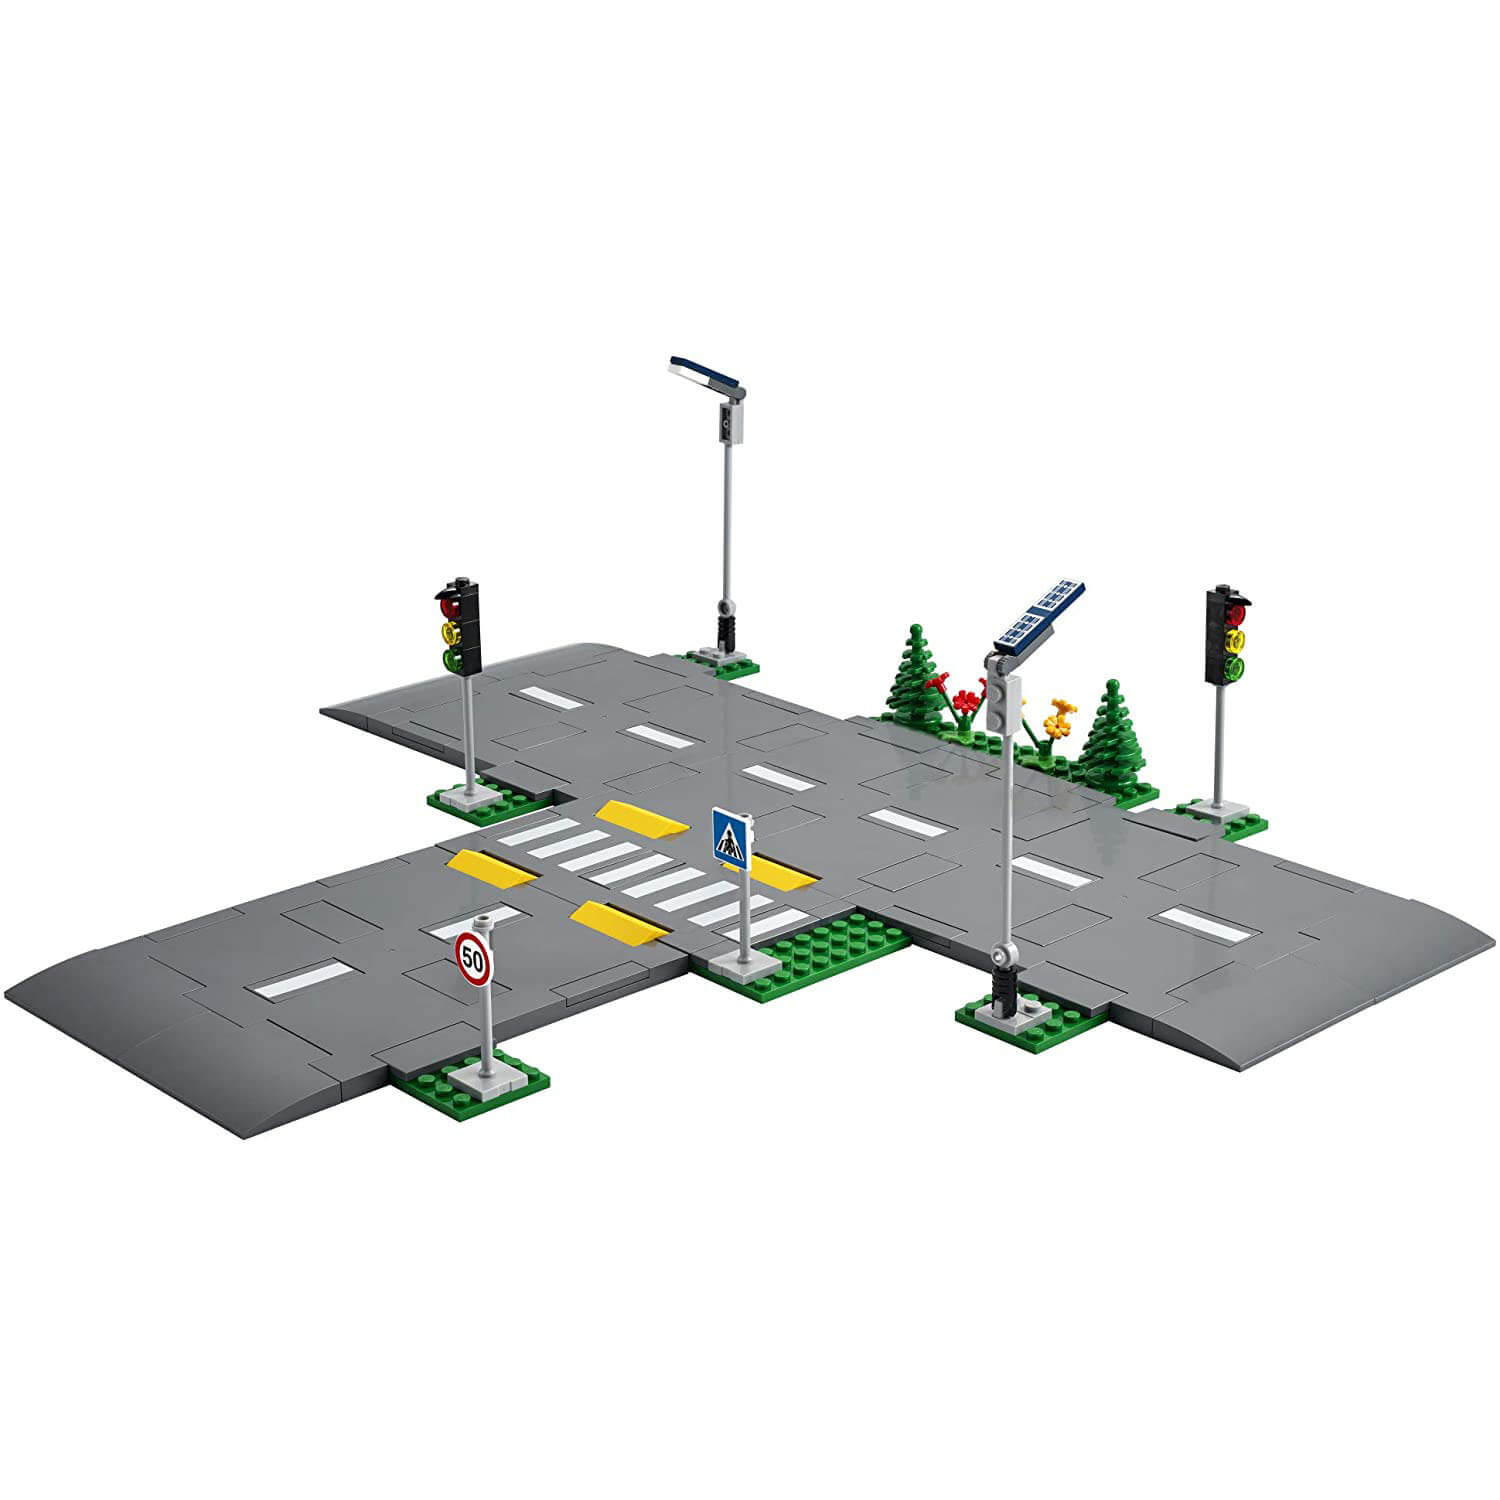 LEGO City Town Road Plates 112 Piece Building Set (60304)